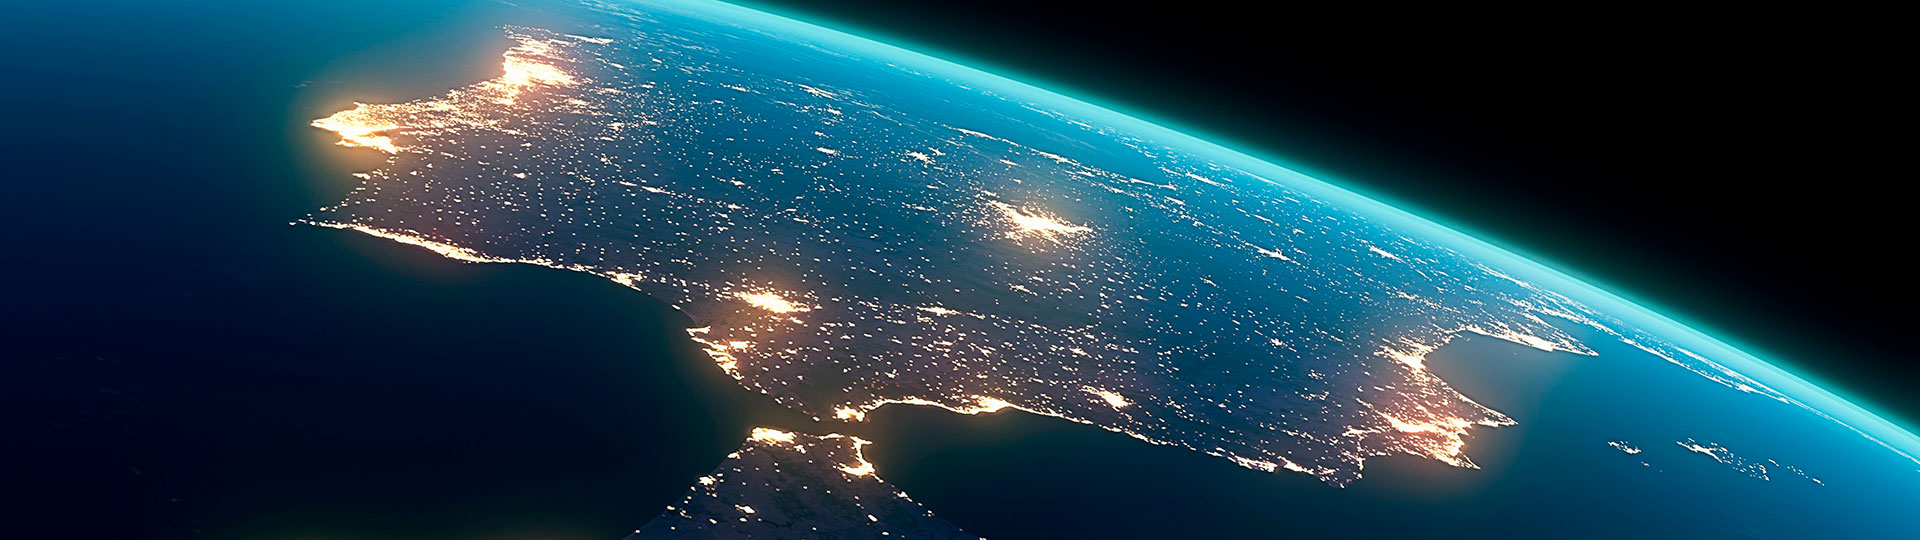 A Península Ibérica vista do espaço